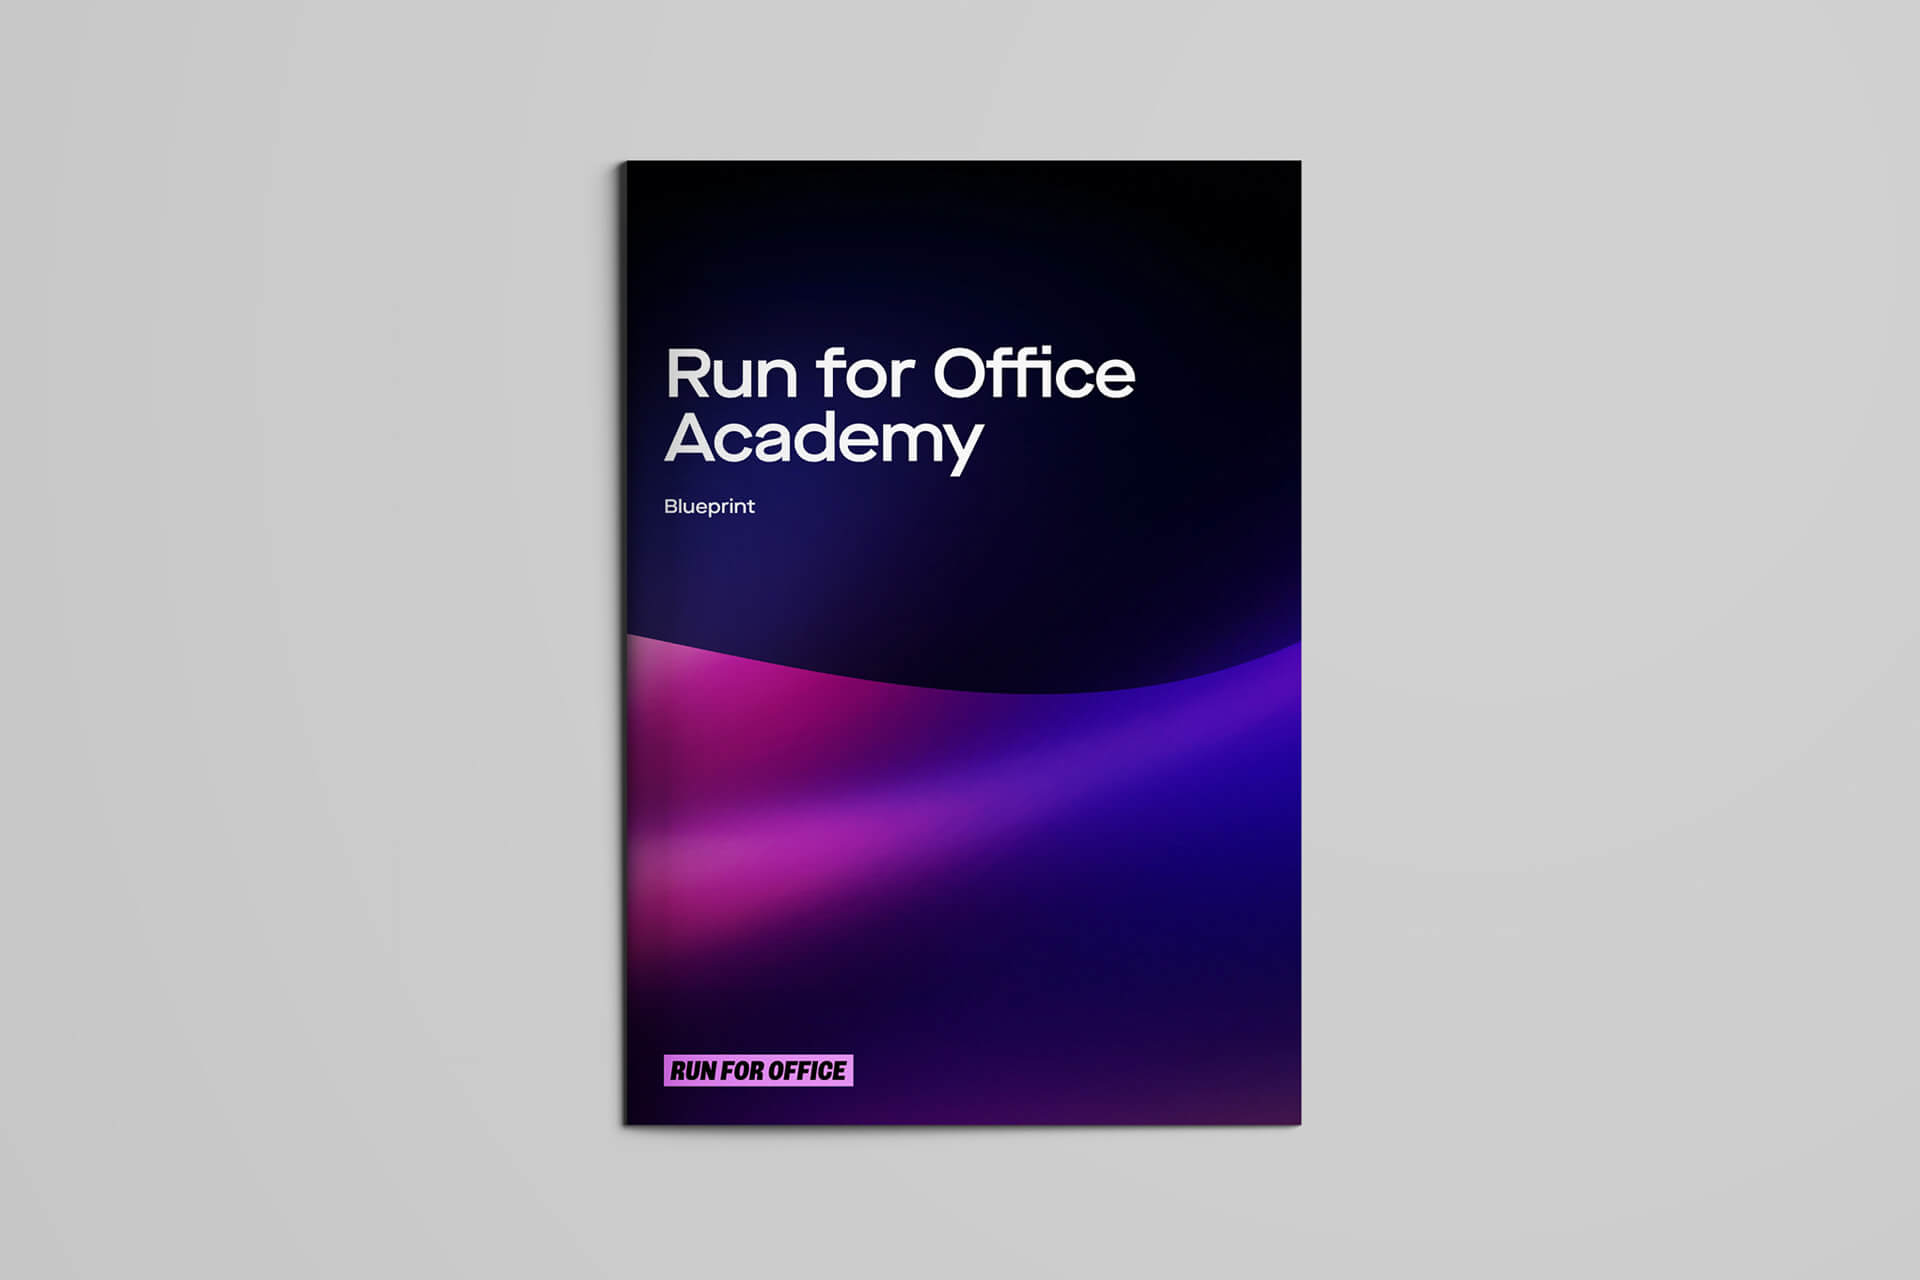 Run For Office Academy blueprint